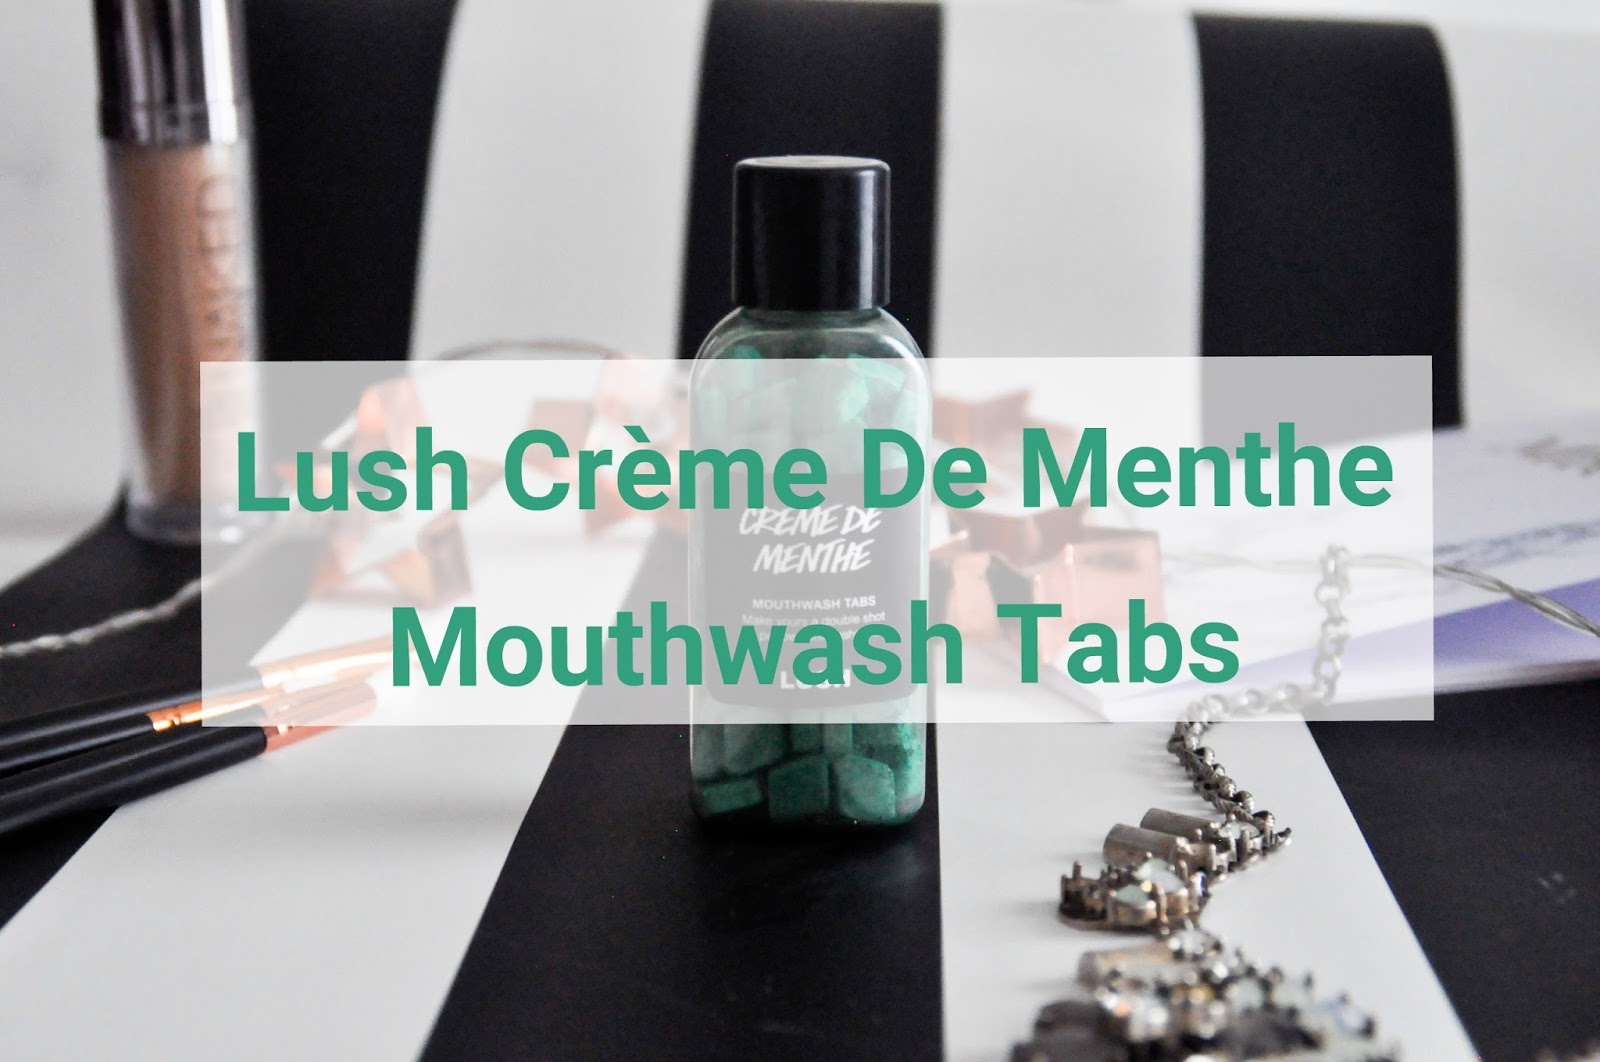 Lush Crème De Menthe Mouthwash Tabs